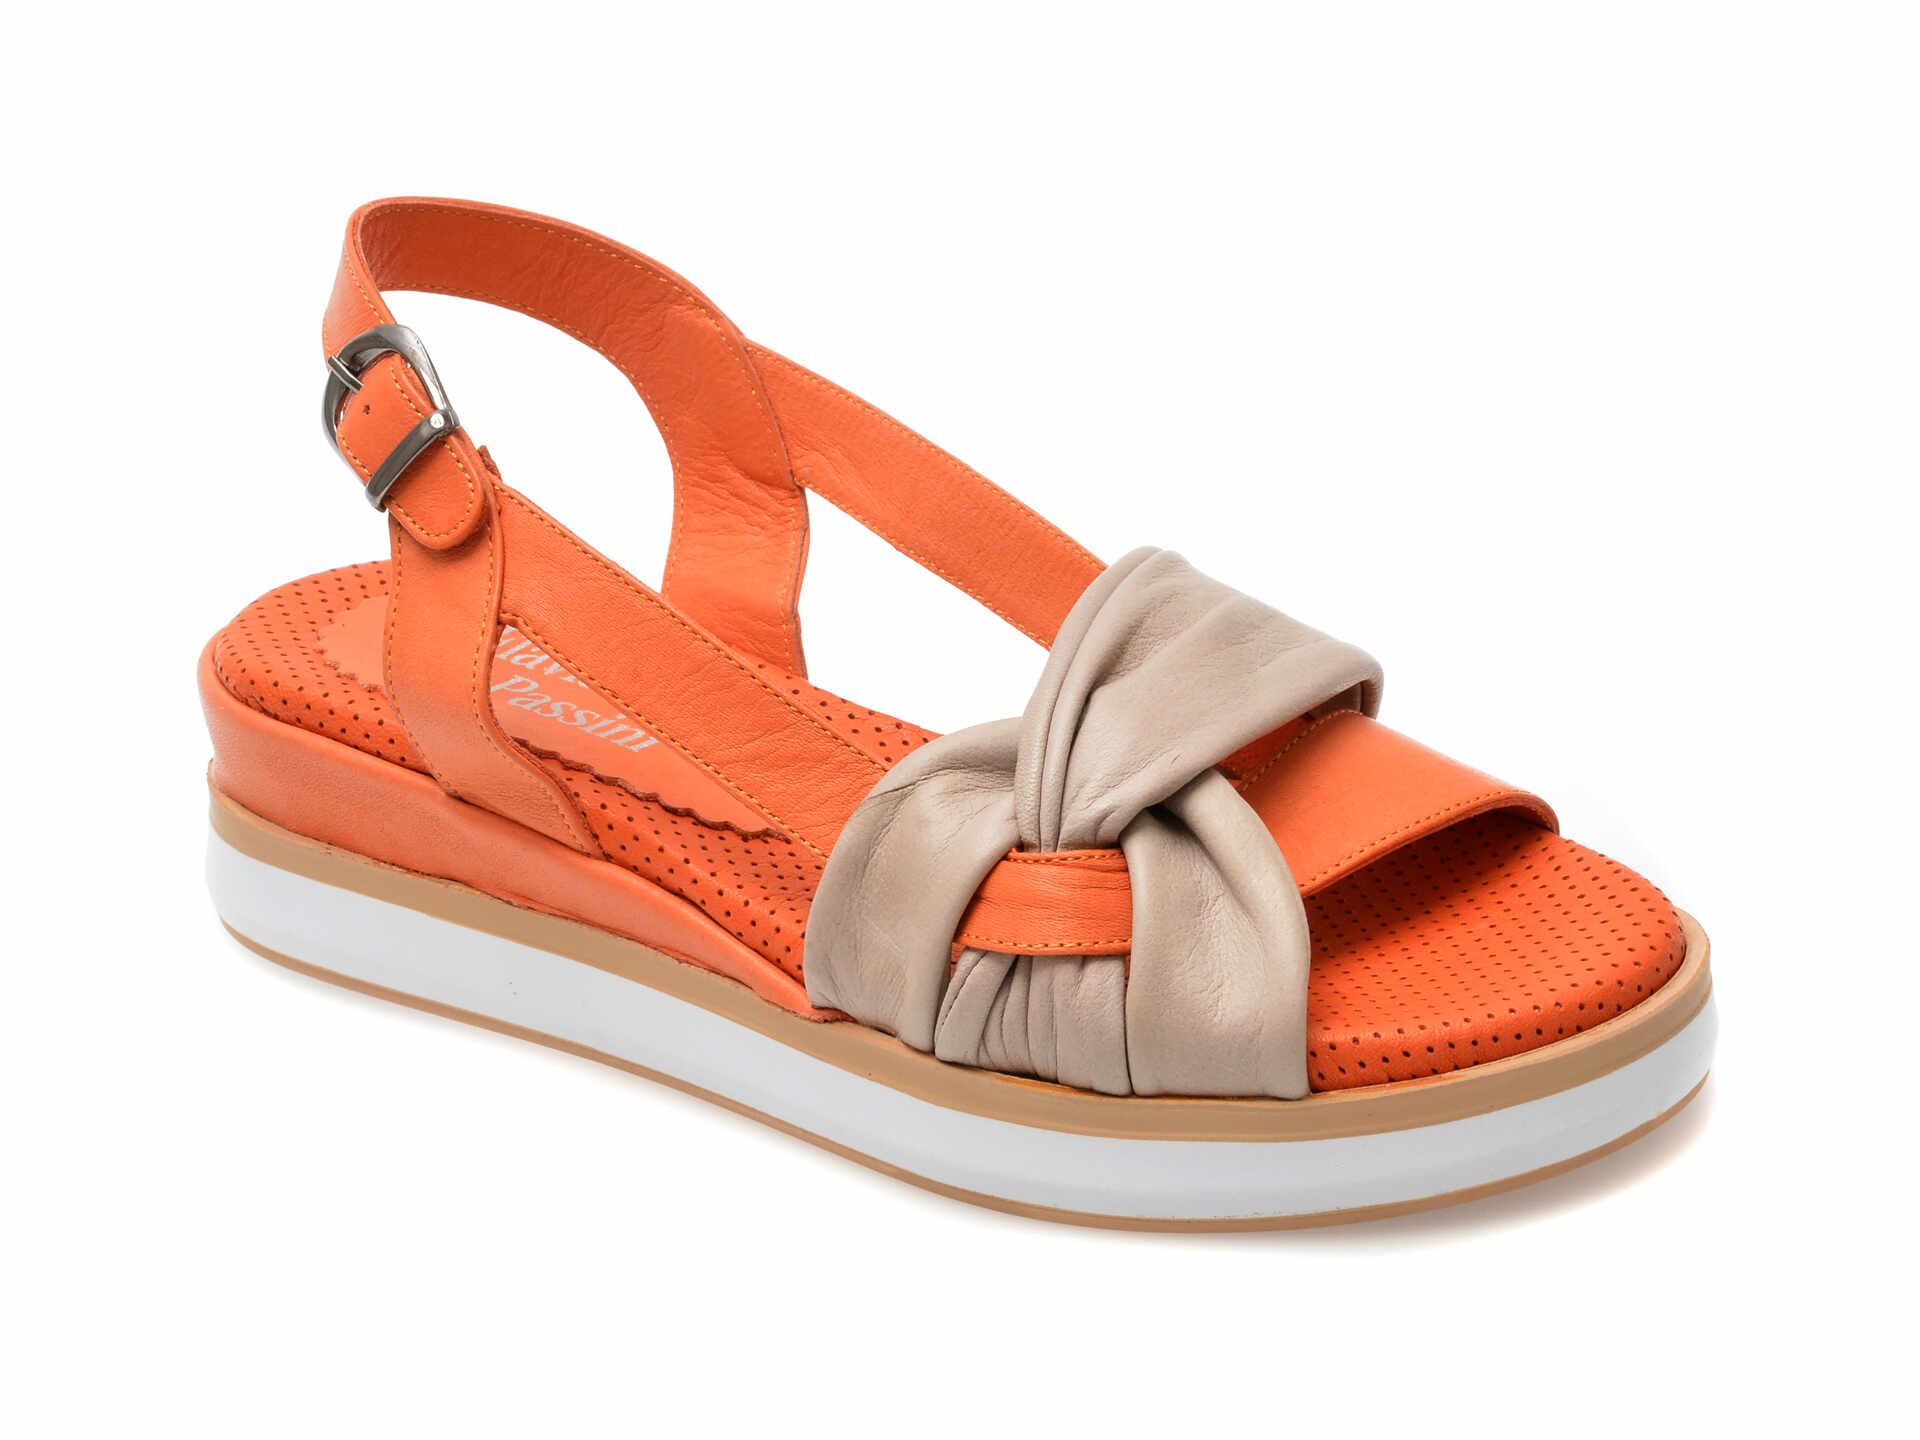 Sandale casual FLAVIA PASSINI portocalii, 6002, din piele naturala